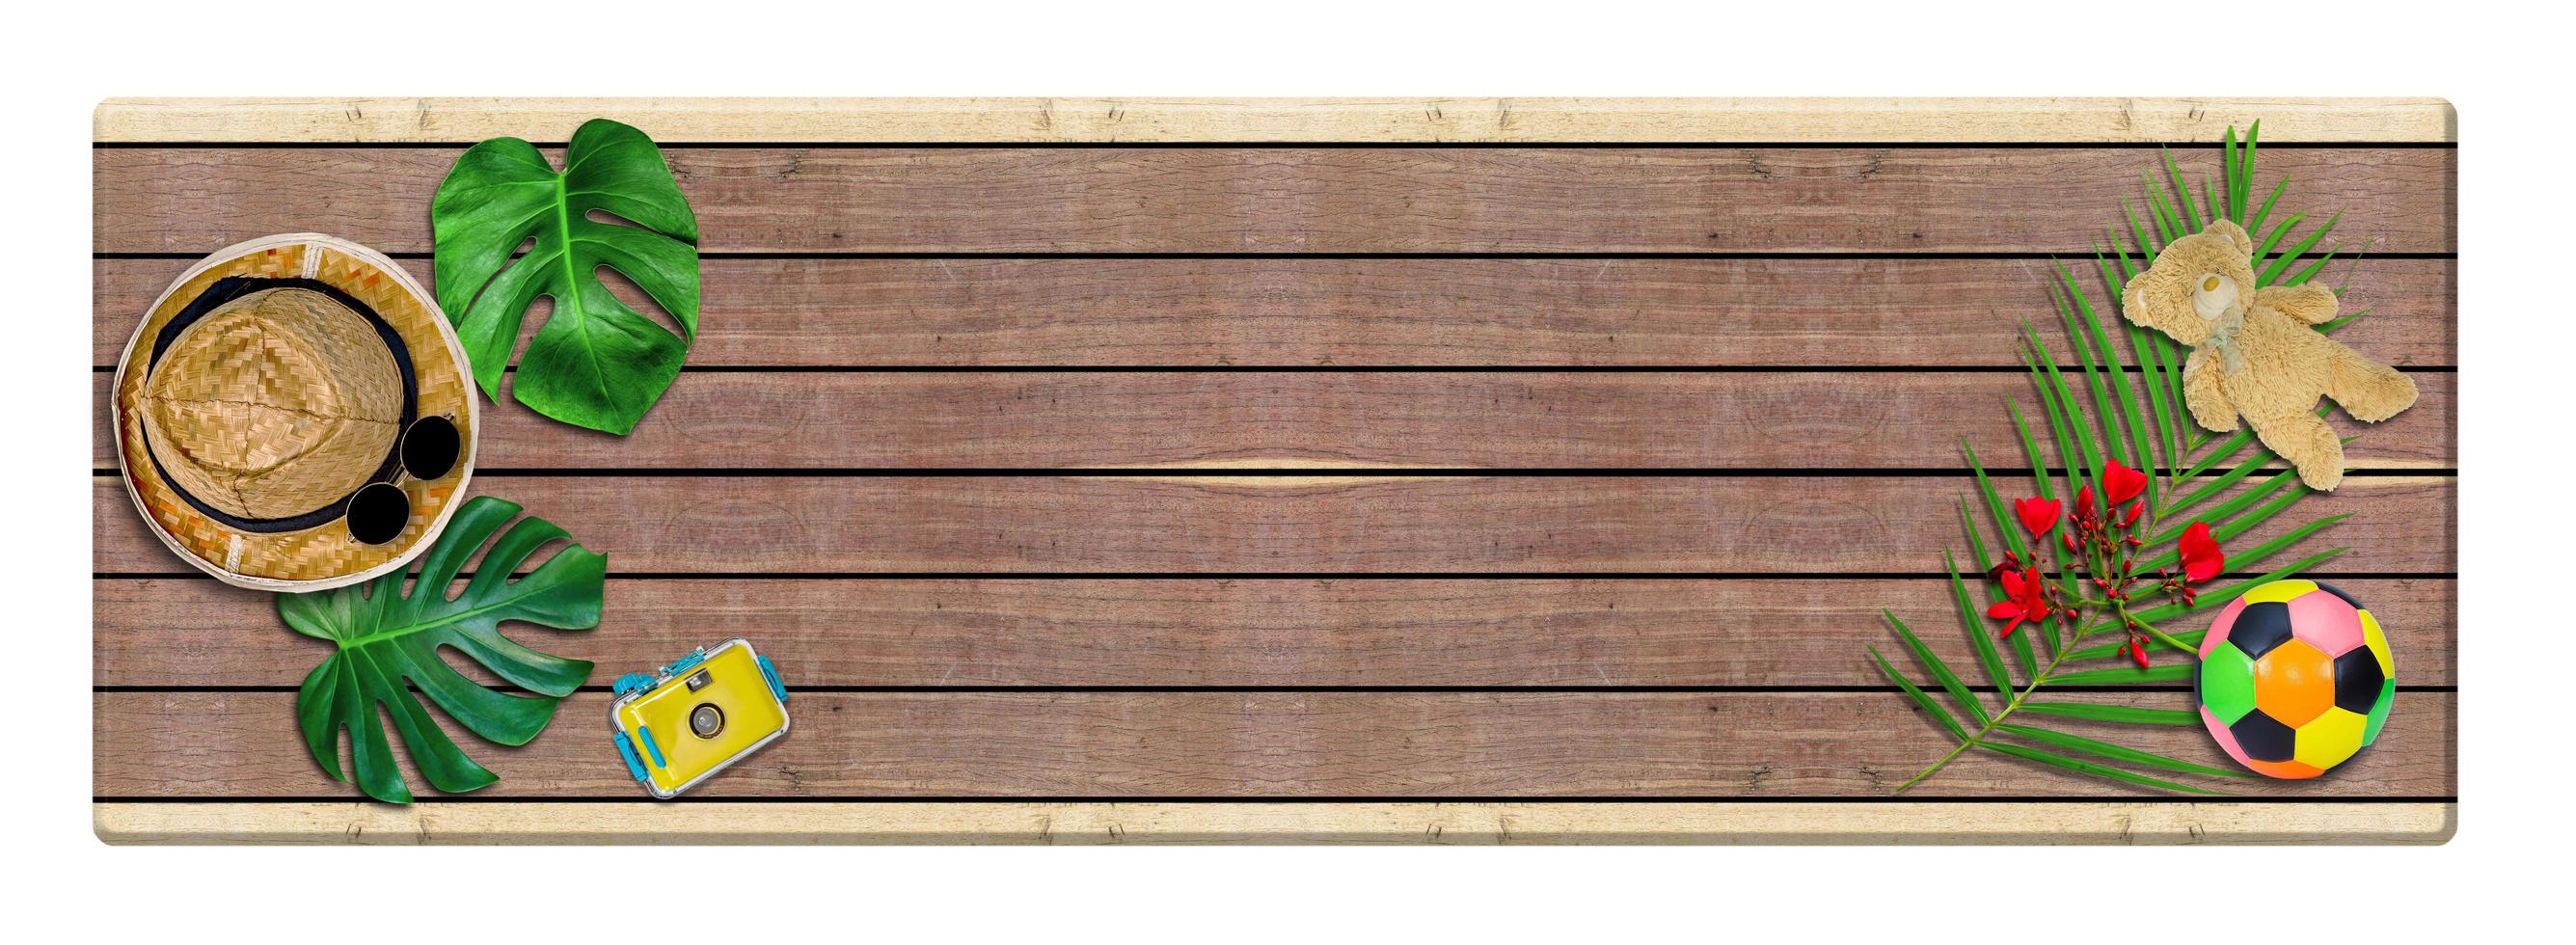 mesa larga de madera con composición de accesorios para el concepto de verano y hojas de palma tropical sobre fondo de madera, vista superior y espacio para copiar foto